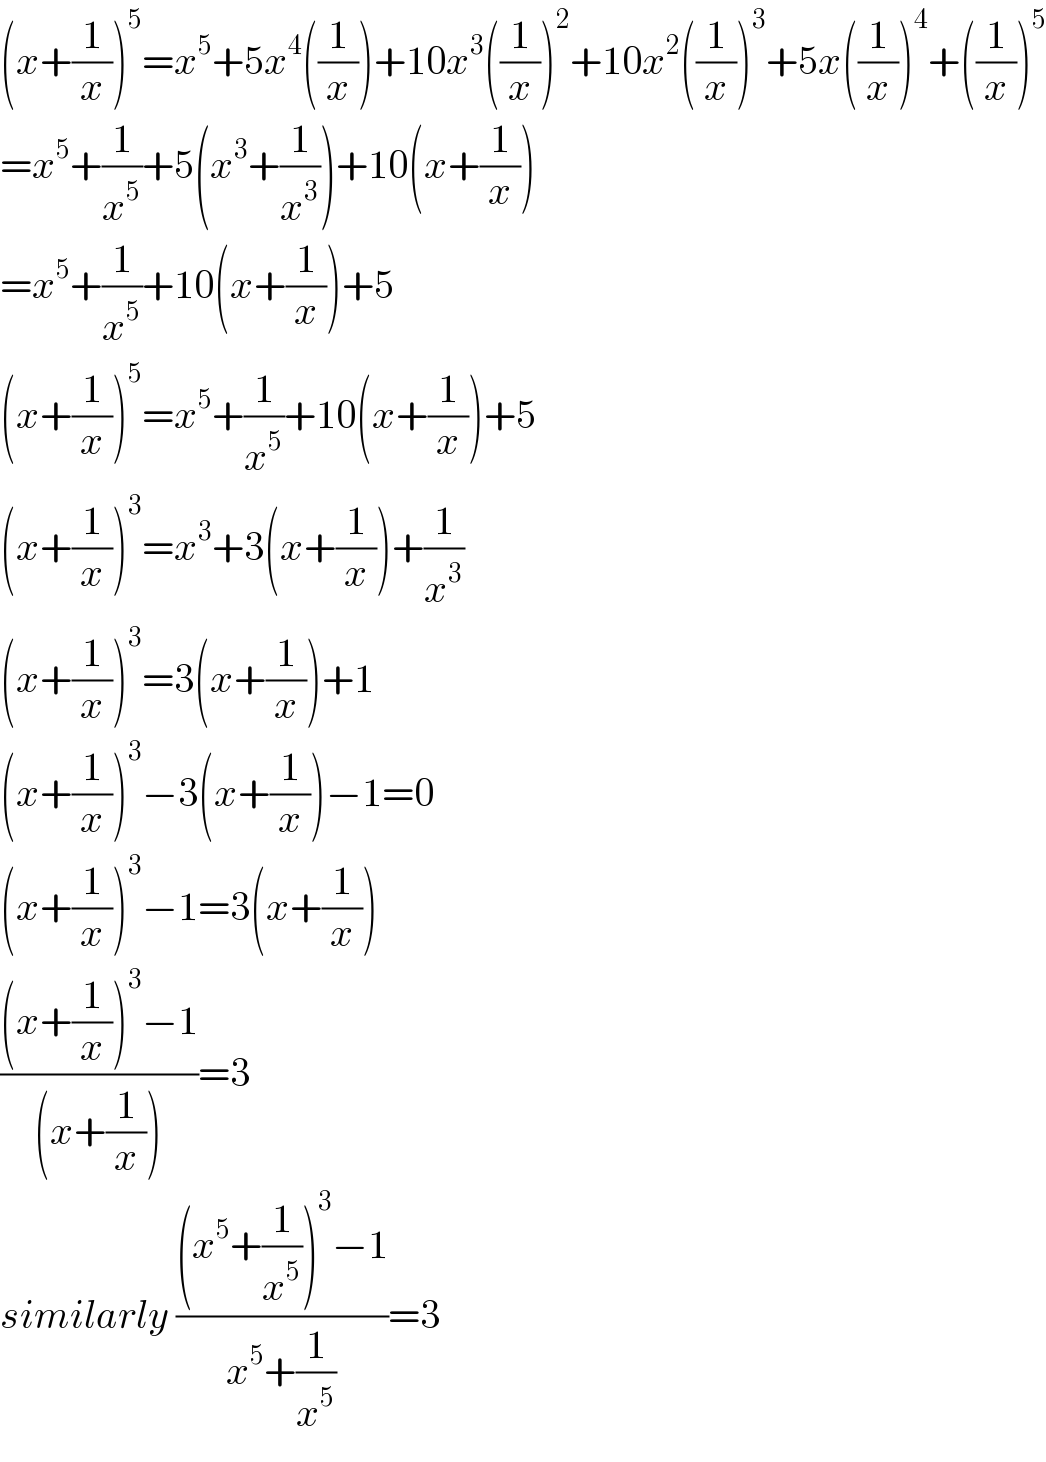 (x+(1/x))^5 =x^5 +5x^4 ((1/x))+10x^3 ((1/x))^2 +10x^2 ((1/x))^3 +5x((1/x))^4 +((1/x))^5   =x^5 +(1/x^5 )+5(x^3 +(1/x^3 ))+10(x+(1/x))  =x^5 +(1/x^5 )+10(x+(1/x))+5  (x+(1/x))^5 =x^5 +(1/x^5 )+10(x+(1/x))+5  (x+(1/x))^3 =x^3 +3(x+(1/x))+(1/x^3 )  (x+(1/x))^3 =3(x+(1/x))+1  (x+(1/x))^3 −3(x+(1/x))−1=0  (x+(1/x))^3 −1=3(x+(1/x))  (((x+(1/x))^3 −1)/((x+(1/x))))=3  similarly (((x^5 +(1/x^5 ))^3 −1)/(x^5 +(1/x^5 )))=3  